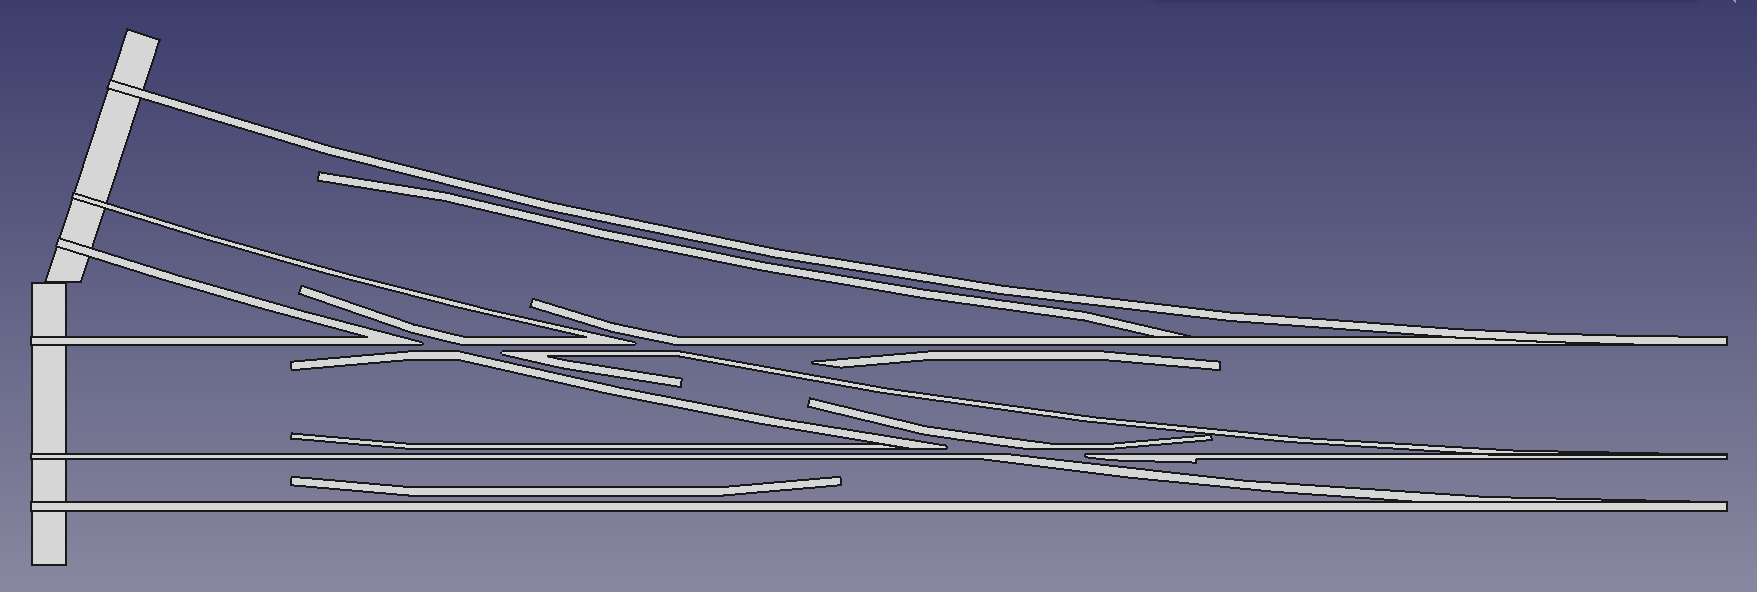 Draufsicht auf eine Dreischienenweiche für die Spurweiten 5 Zoll & 7 ¼ Zoll (FreeCAD Zeichnung)